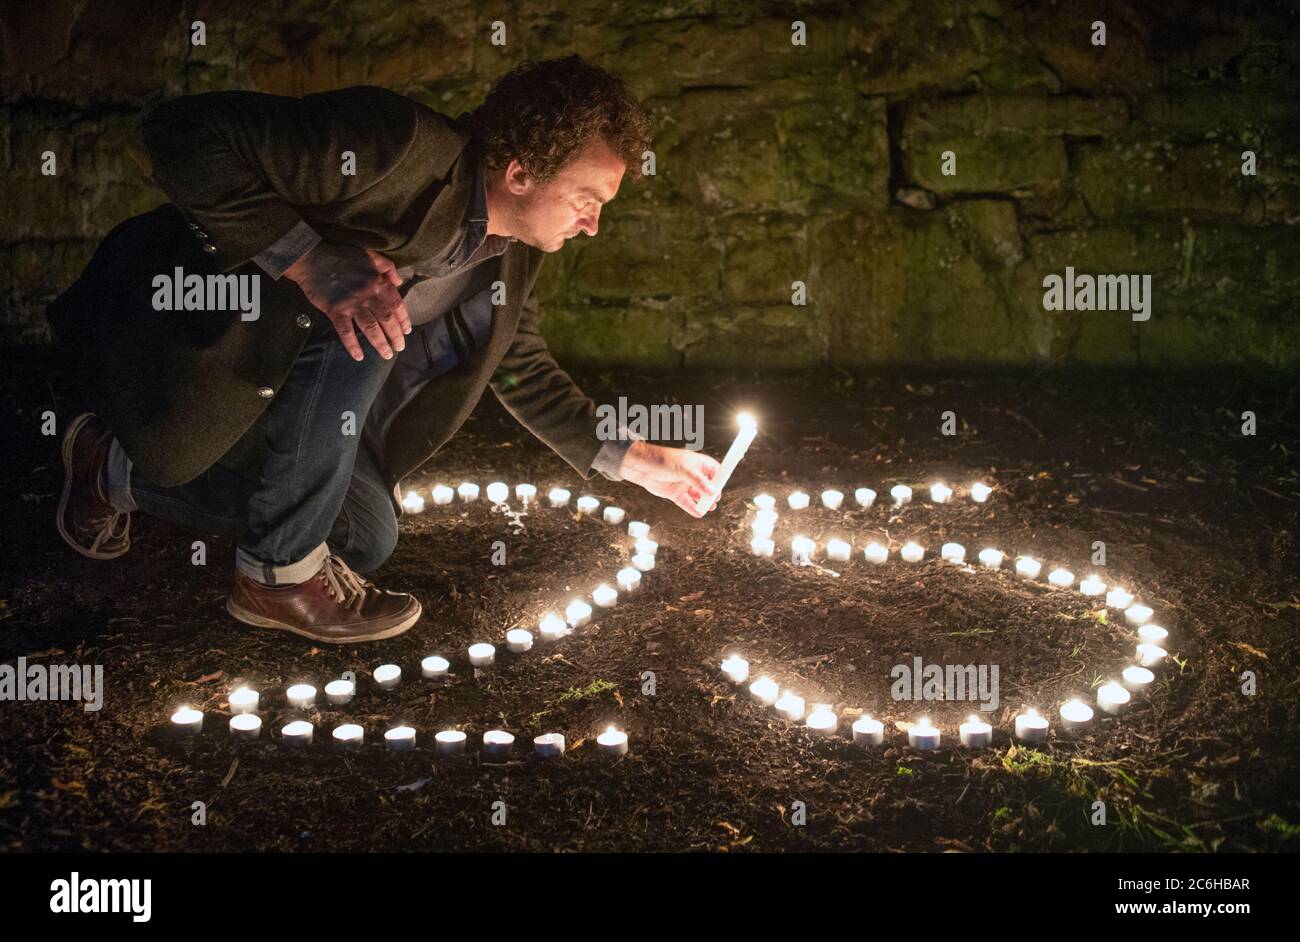 Samir Mehanovic, réalisateur primé par le BAFTA, venu au Royaume-Uni en tant qu'immigrant de la guerre de Bosnie en 1995 et qui vit maintenant à Édimbourg, allume des bougies pour commémorer le 25e anniversaire du génocide de Srebrenica. Banque D'Images